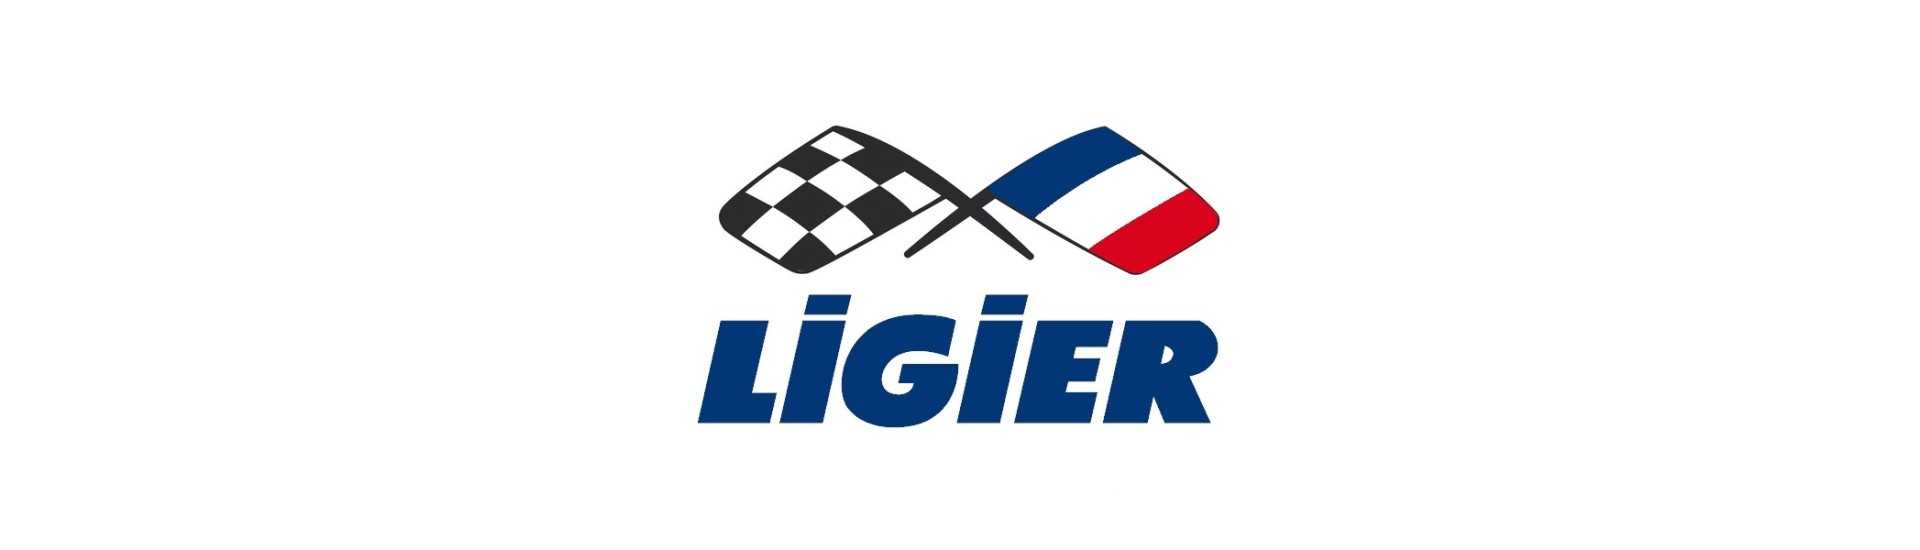 Bestes Preis für Auto ohne Lizenz Ligier